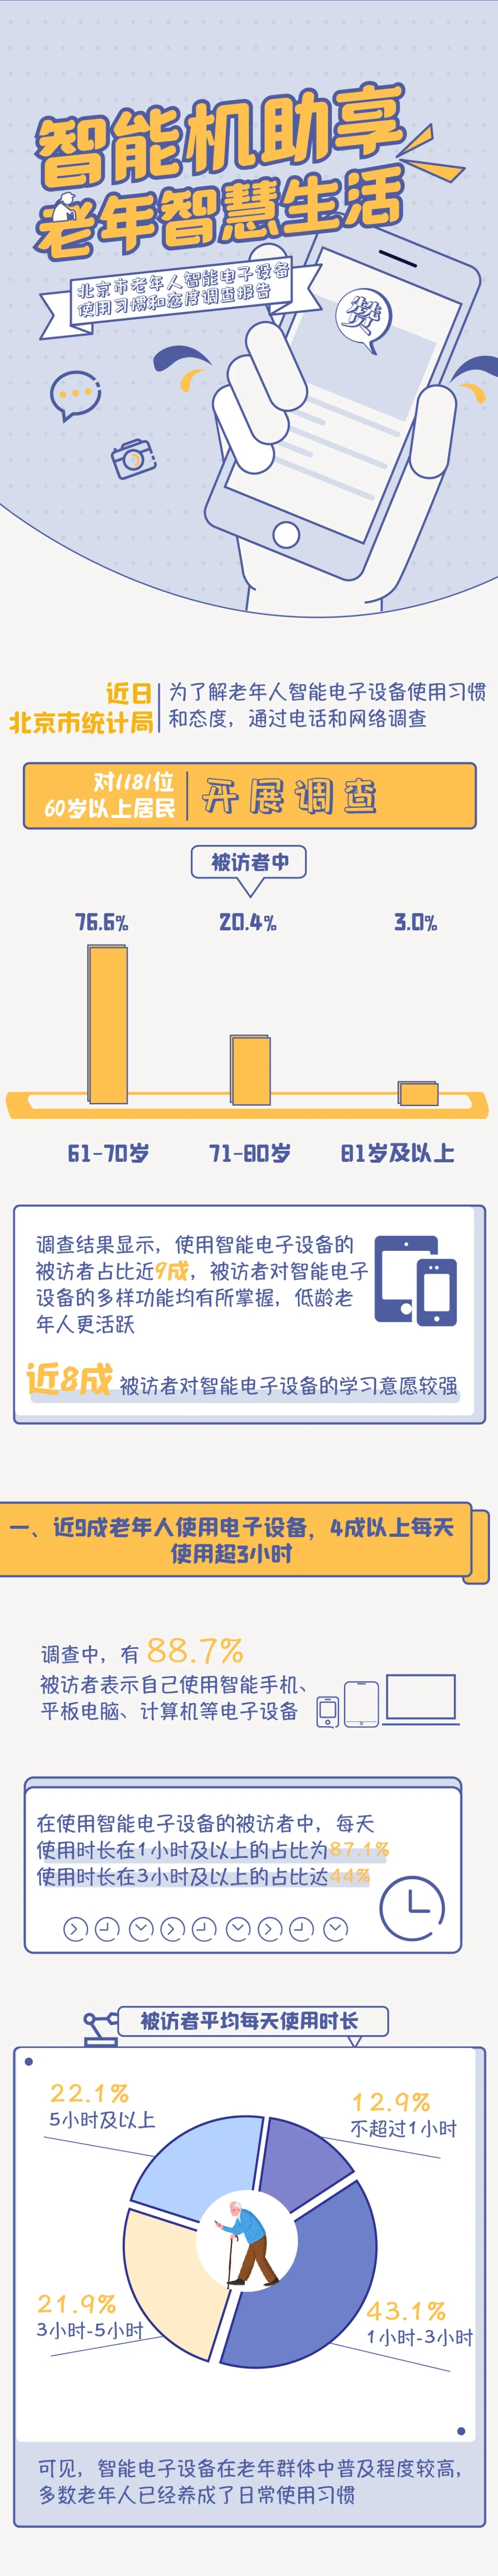 北京市老年人智能电子设备使用习惯和态度调查报告